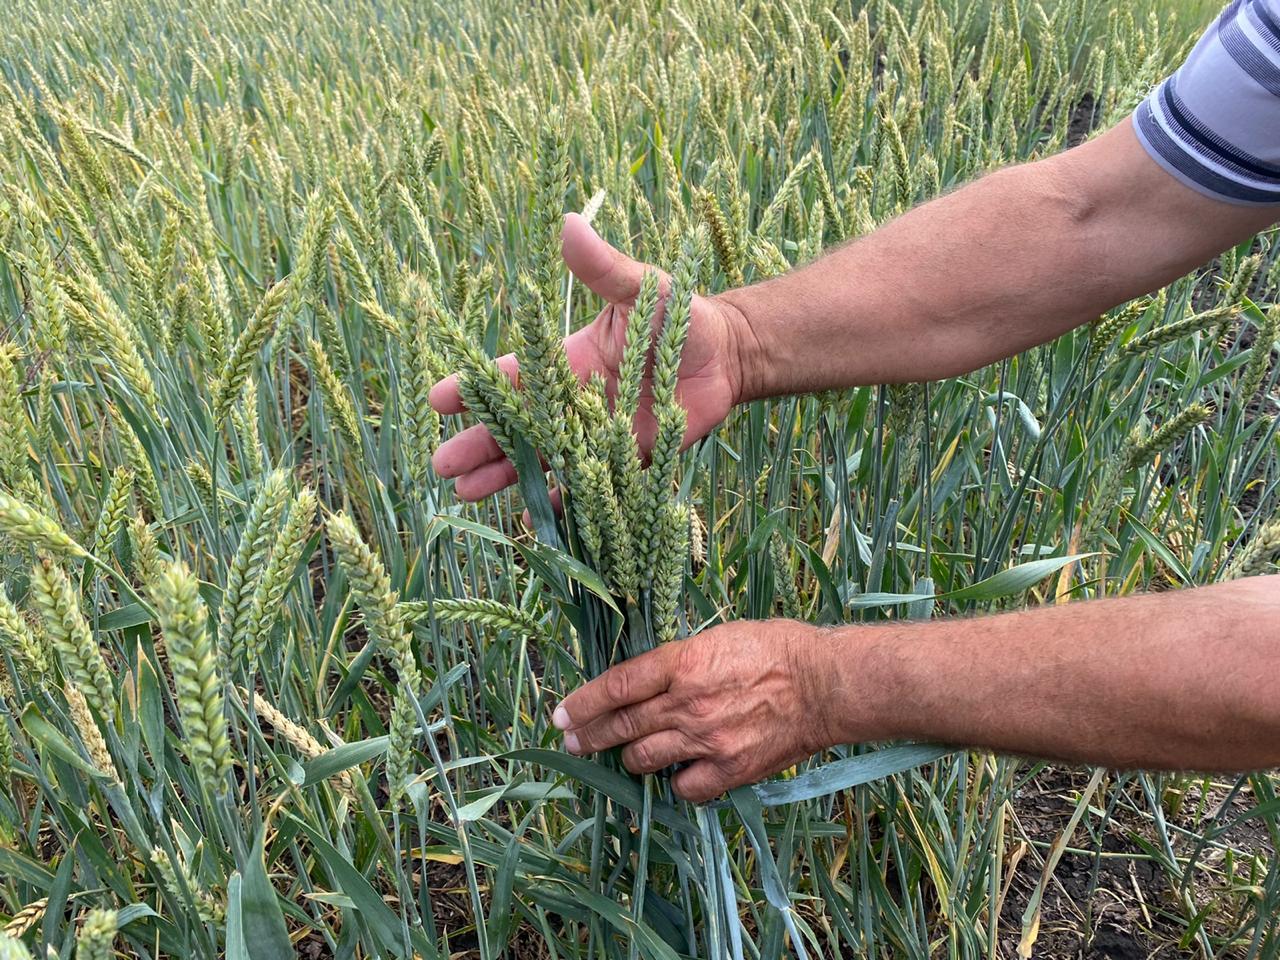 Сорта озимой пшеницы характеристики